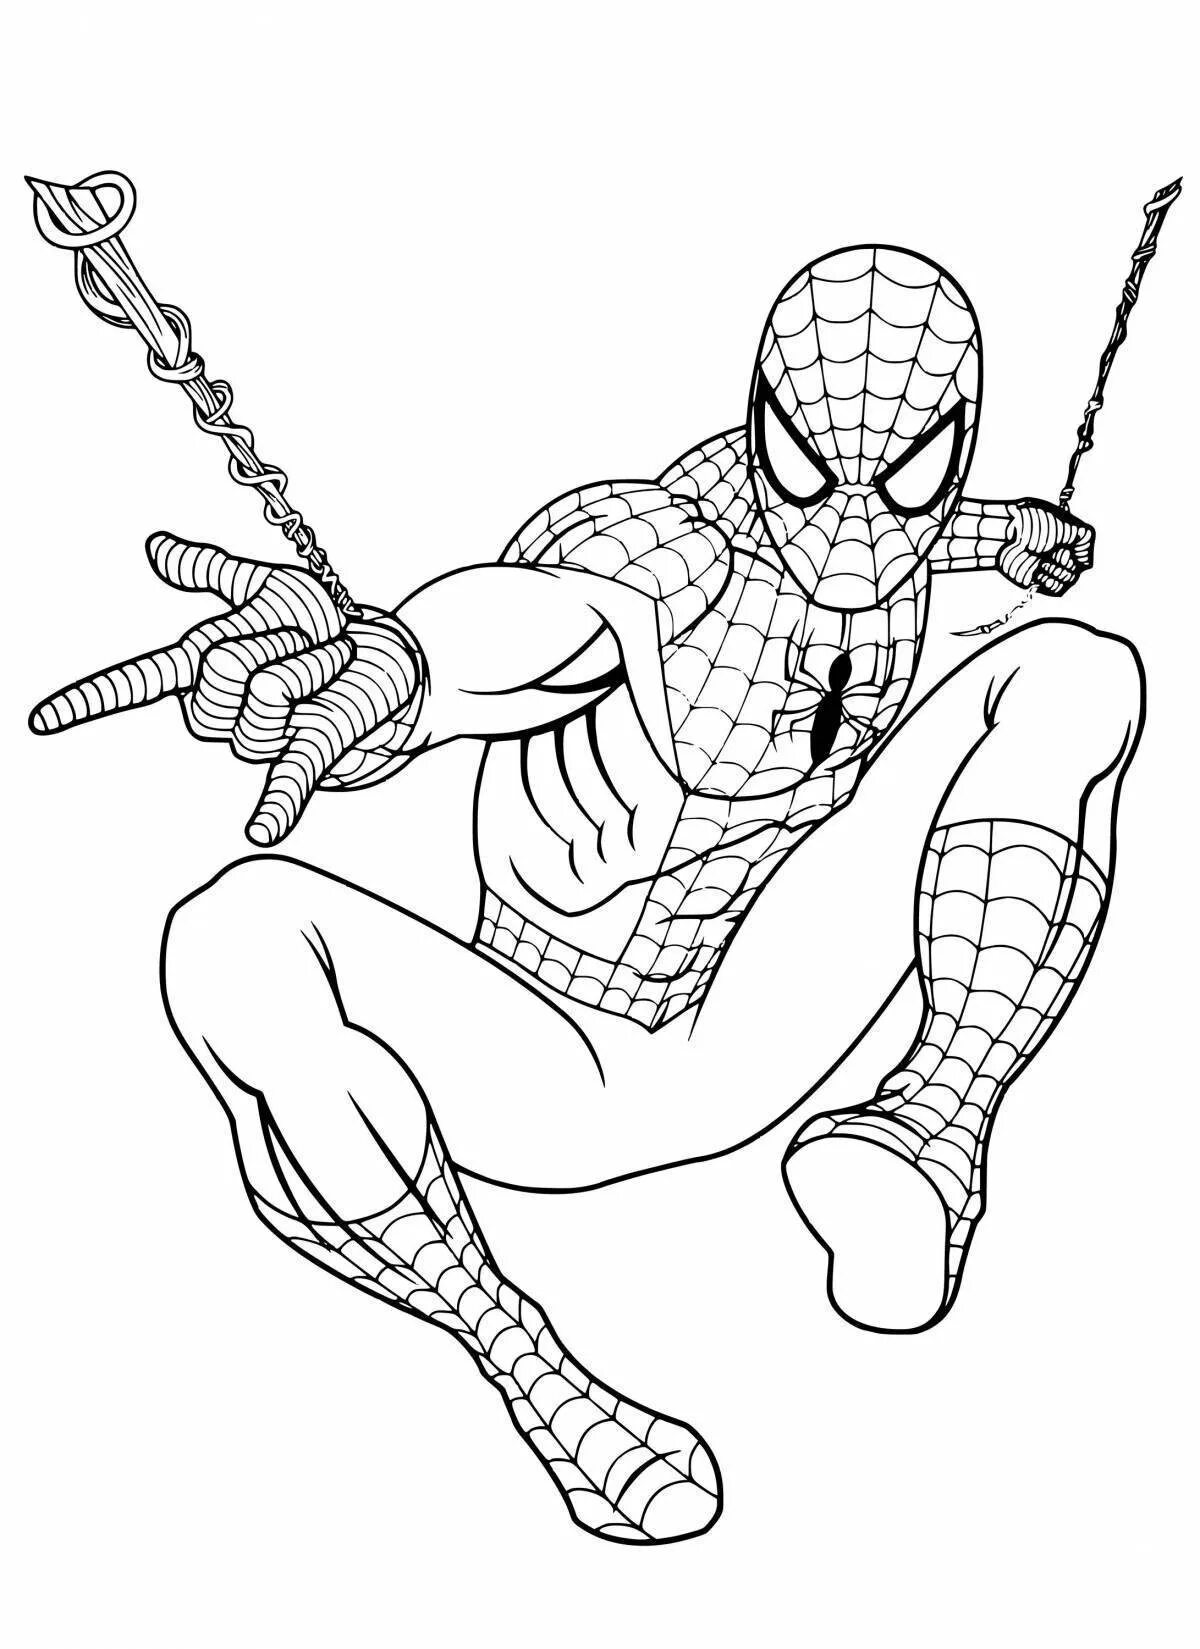 Рисунки для мальчиков 8. Раскраска Супергерои Марвел человек паук. Раскраска Спайдер Мэн. Раскраски для мальчиков Супергерои человек паук. Раскраски Марвел Мстители человек паук.